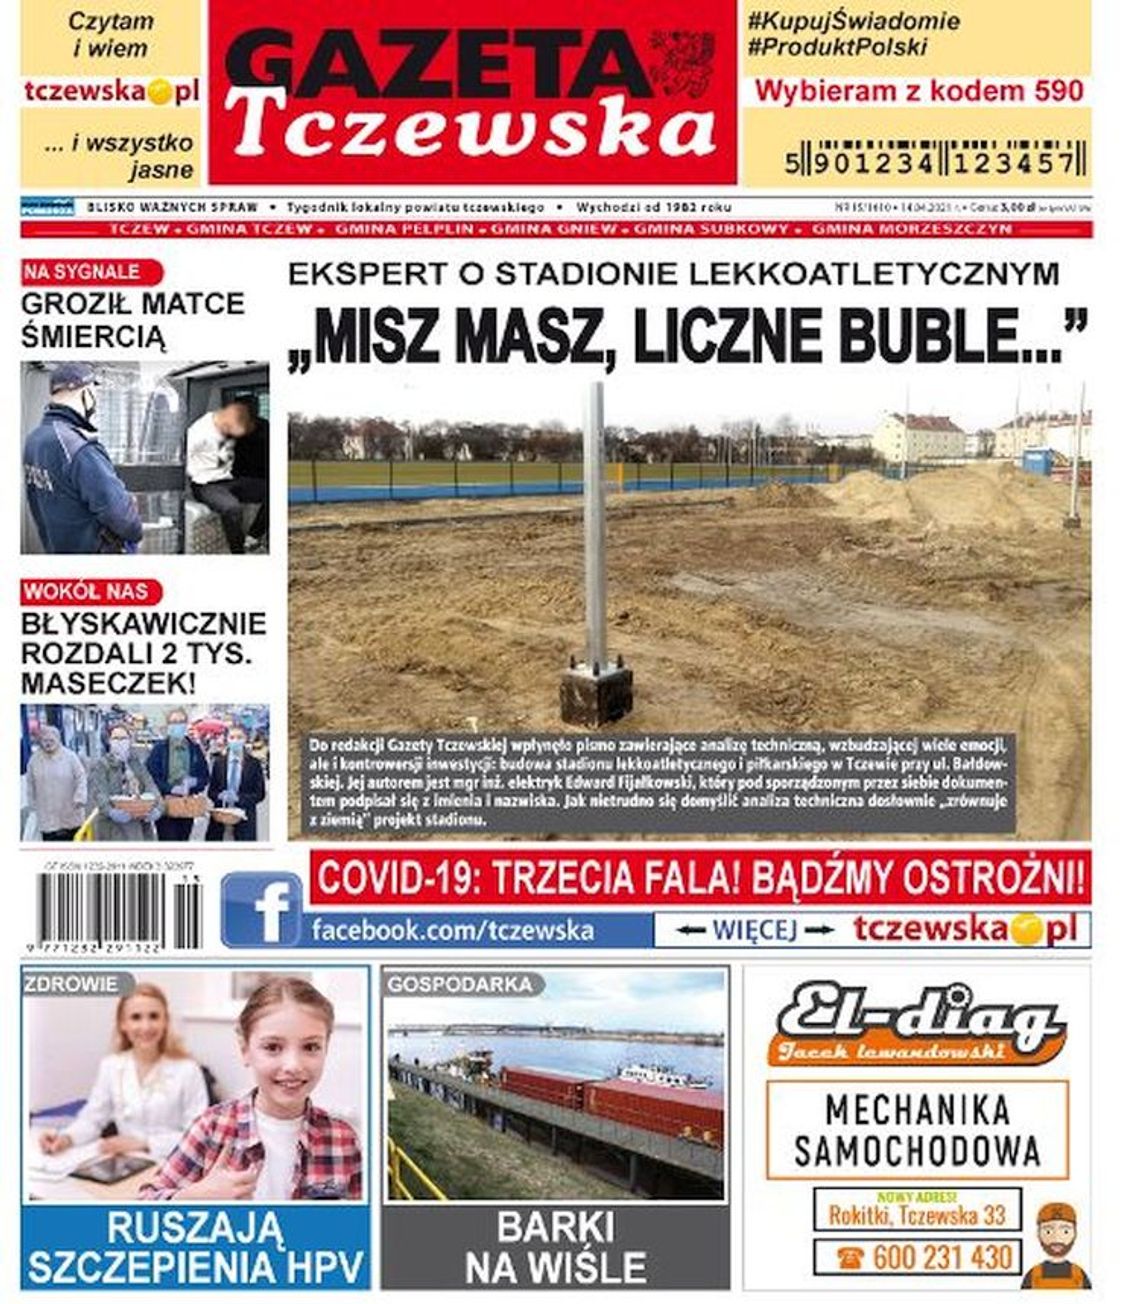 Nowy numer Gazety Tczewskiej już w sprzedaży. Najświeższe informacje z Tczewa oraz okolic naszego powiatu już w twoim kiosku. Co w środku?